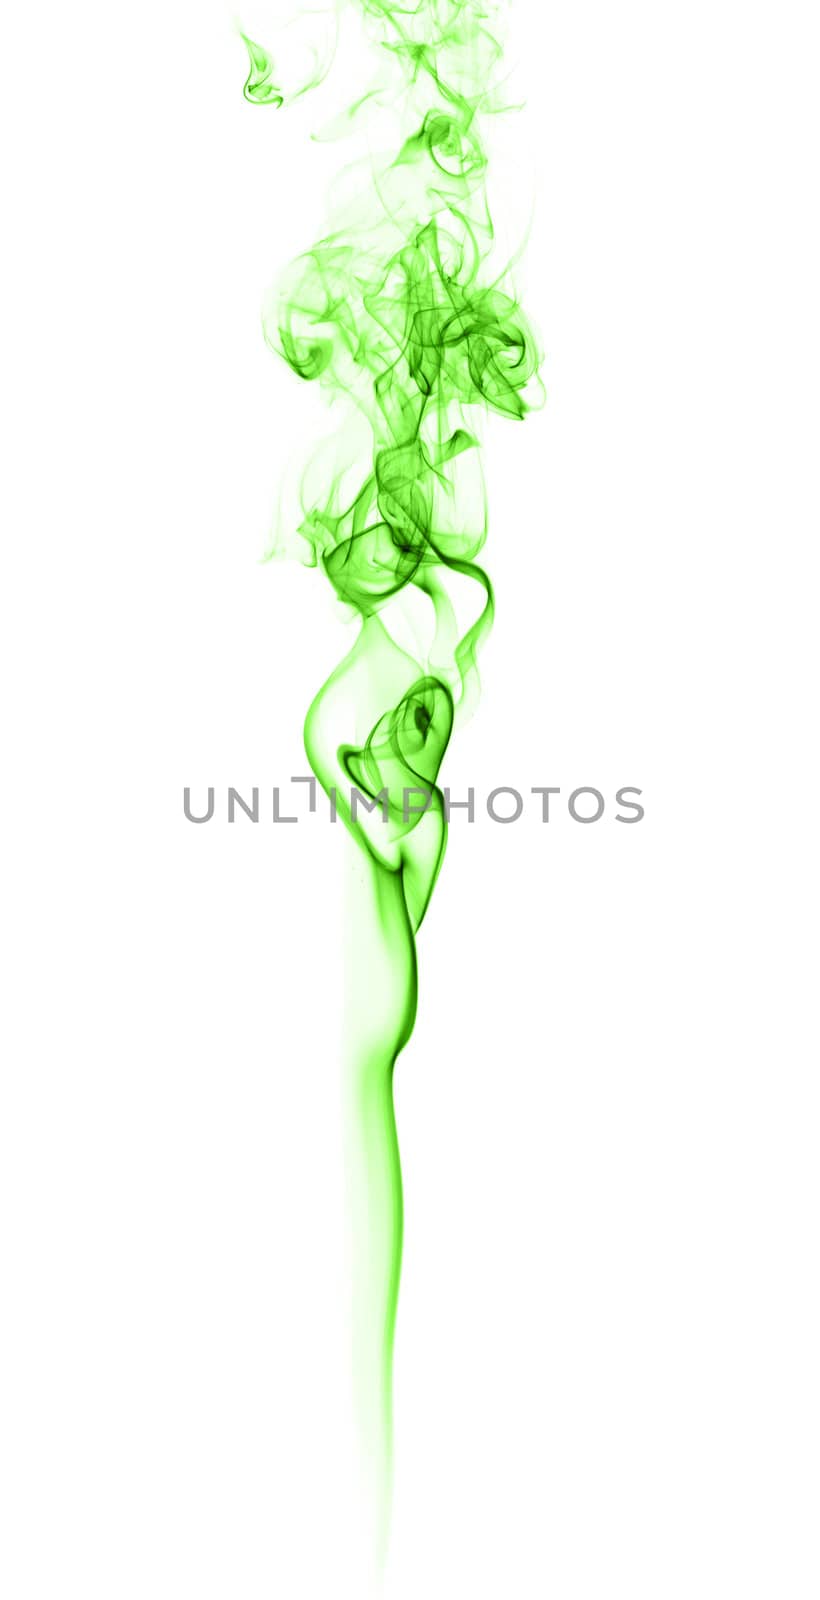 Green Smoke On White by petr_malyshev